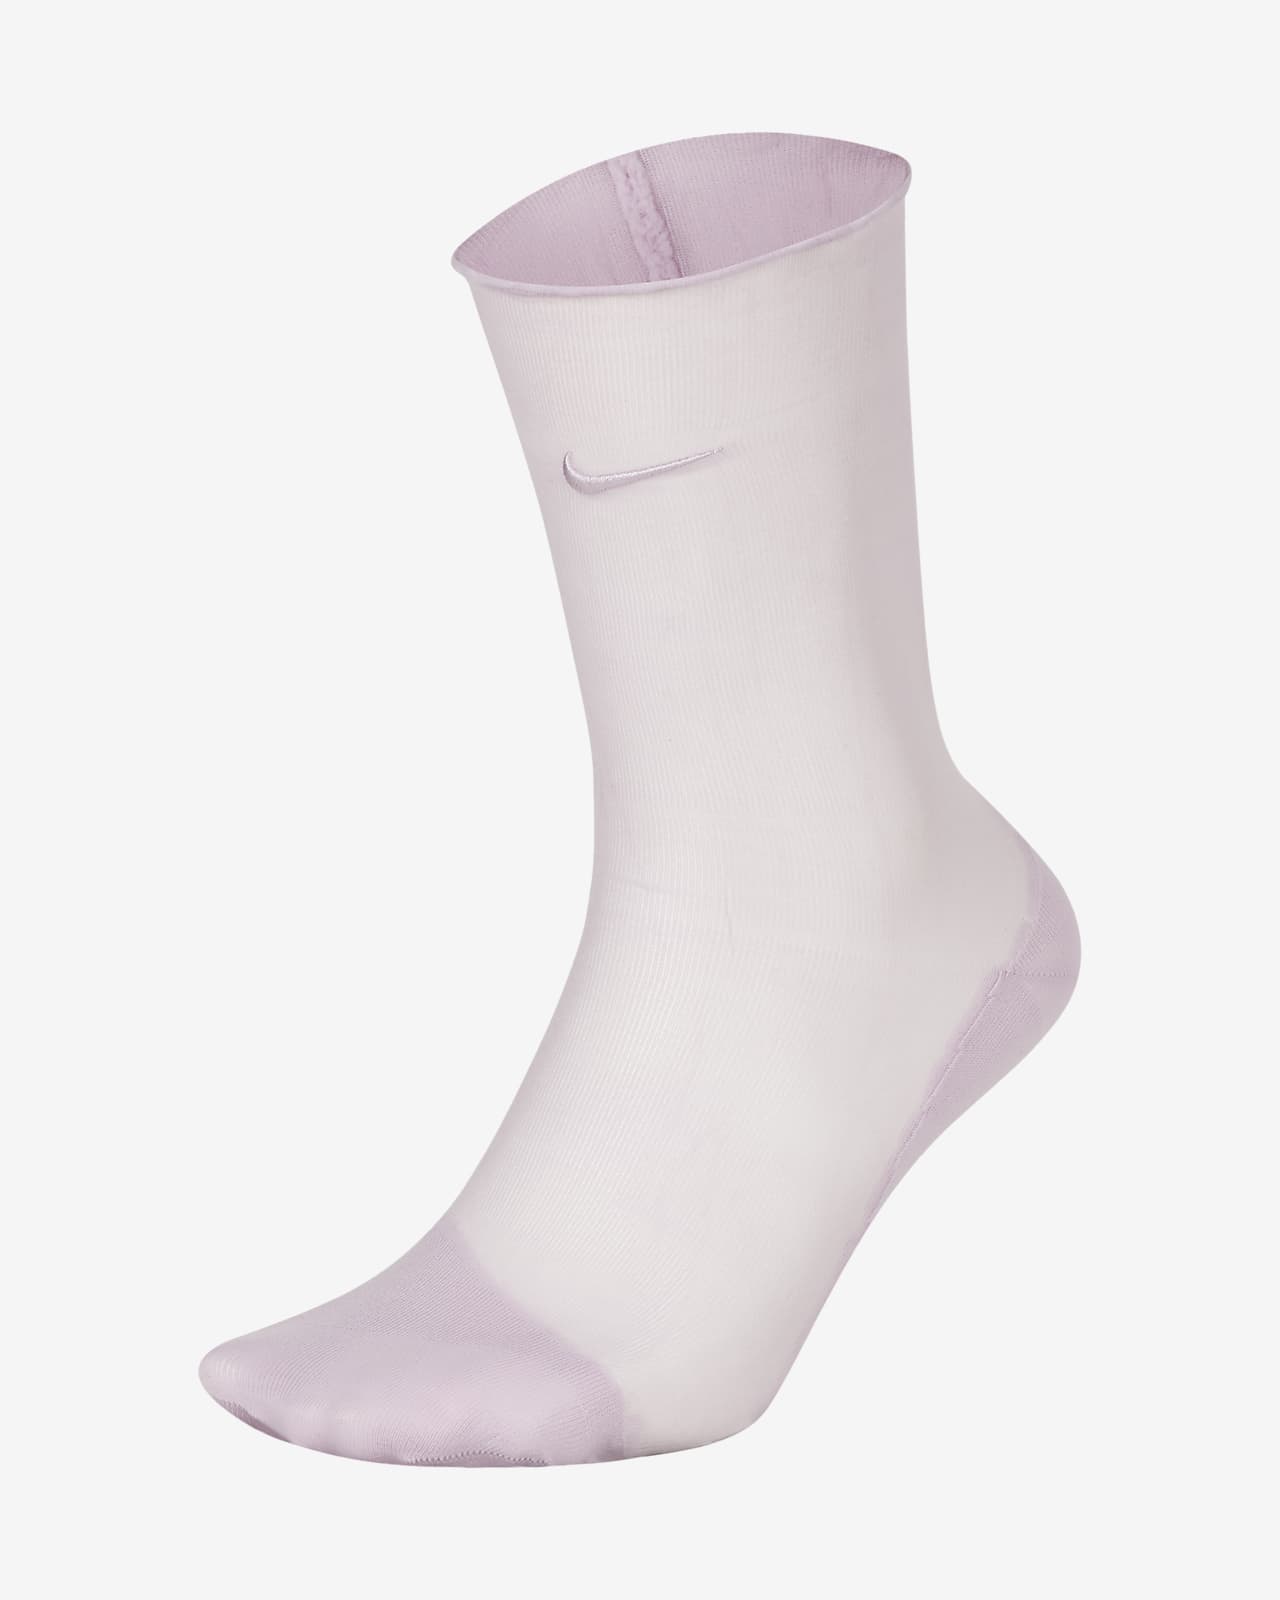 Nike Sheer Women's Training Ankle Socks 